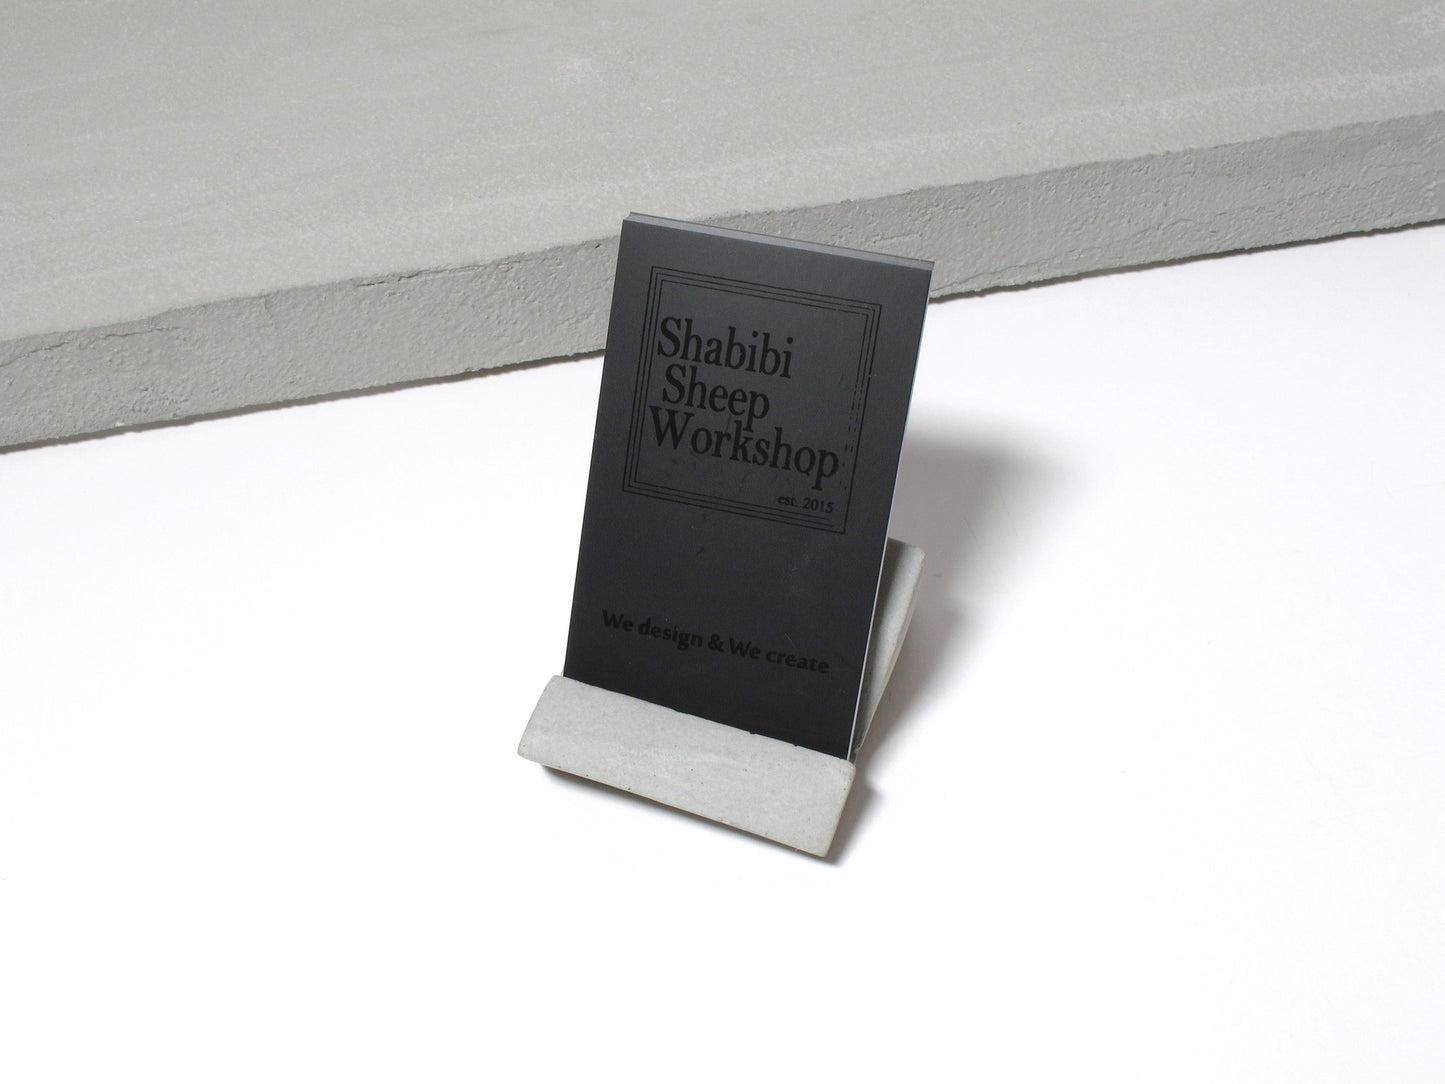 Concrete desktop business card holder (Vertical business cards)